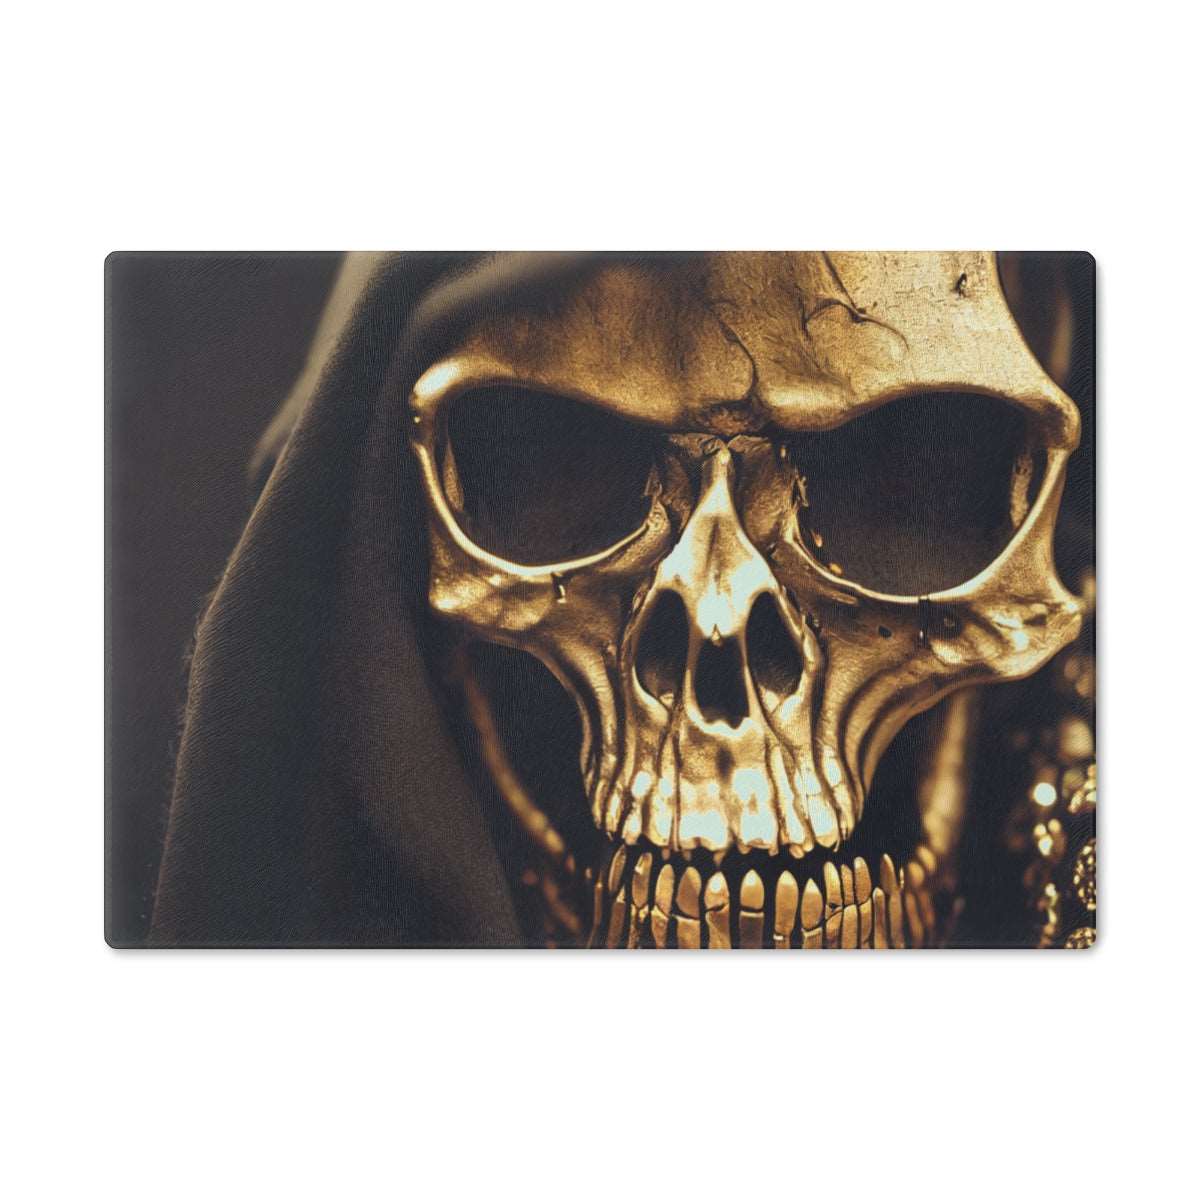 Artified Golden Grim Reaper Cutting Board